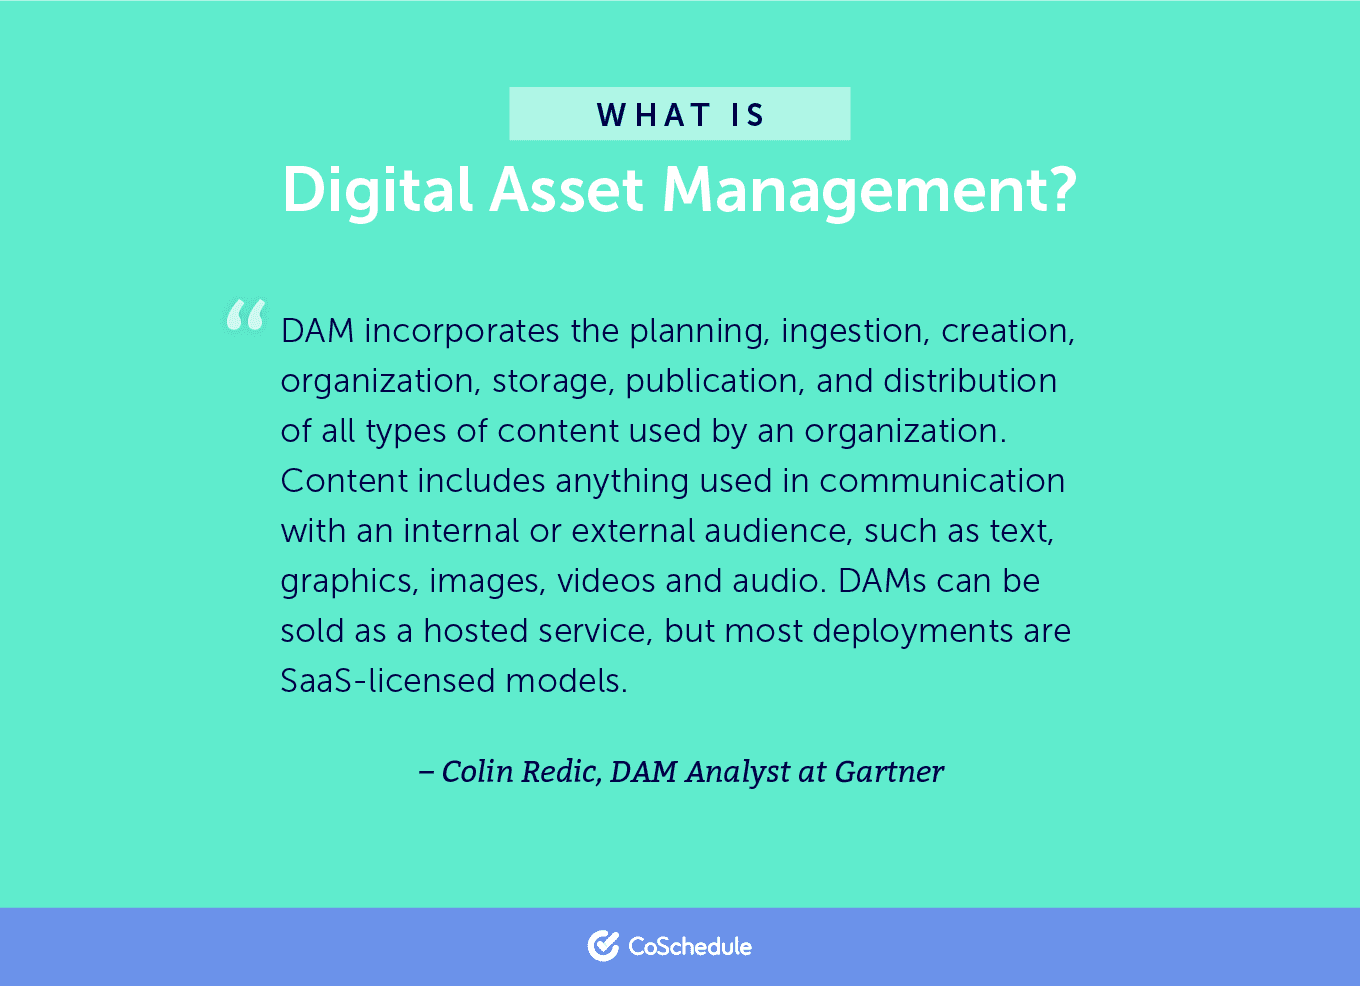 definition for digital asset management